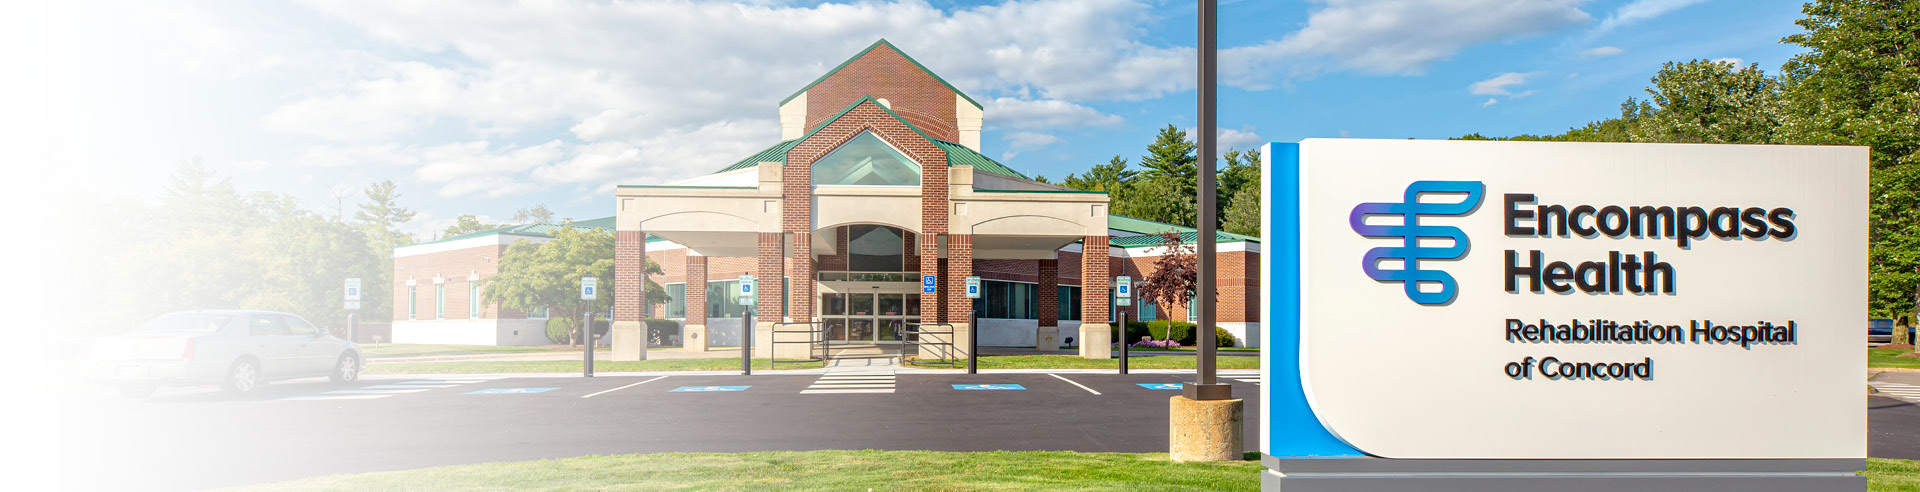 Encompass Health Rehabilitation Hospital of Concord exterior